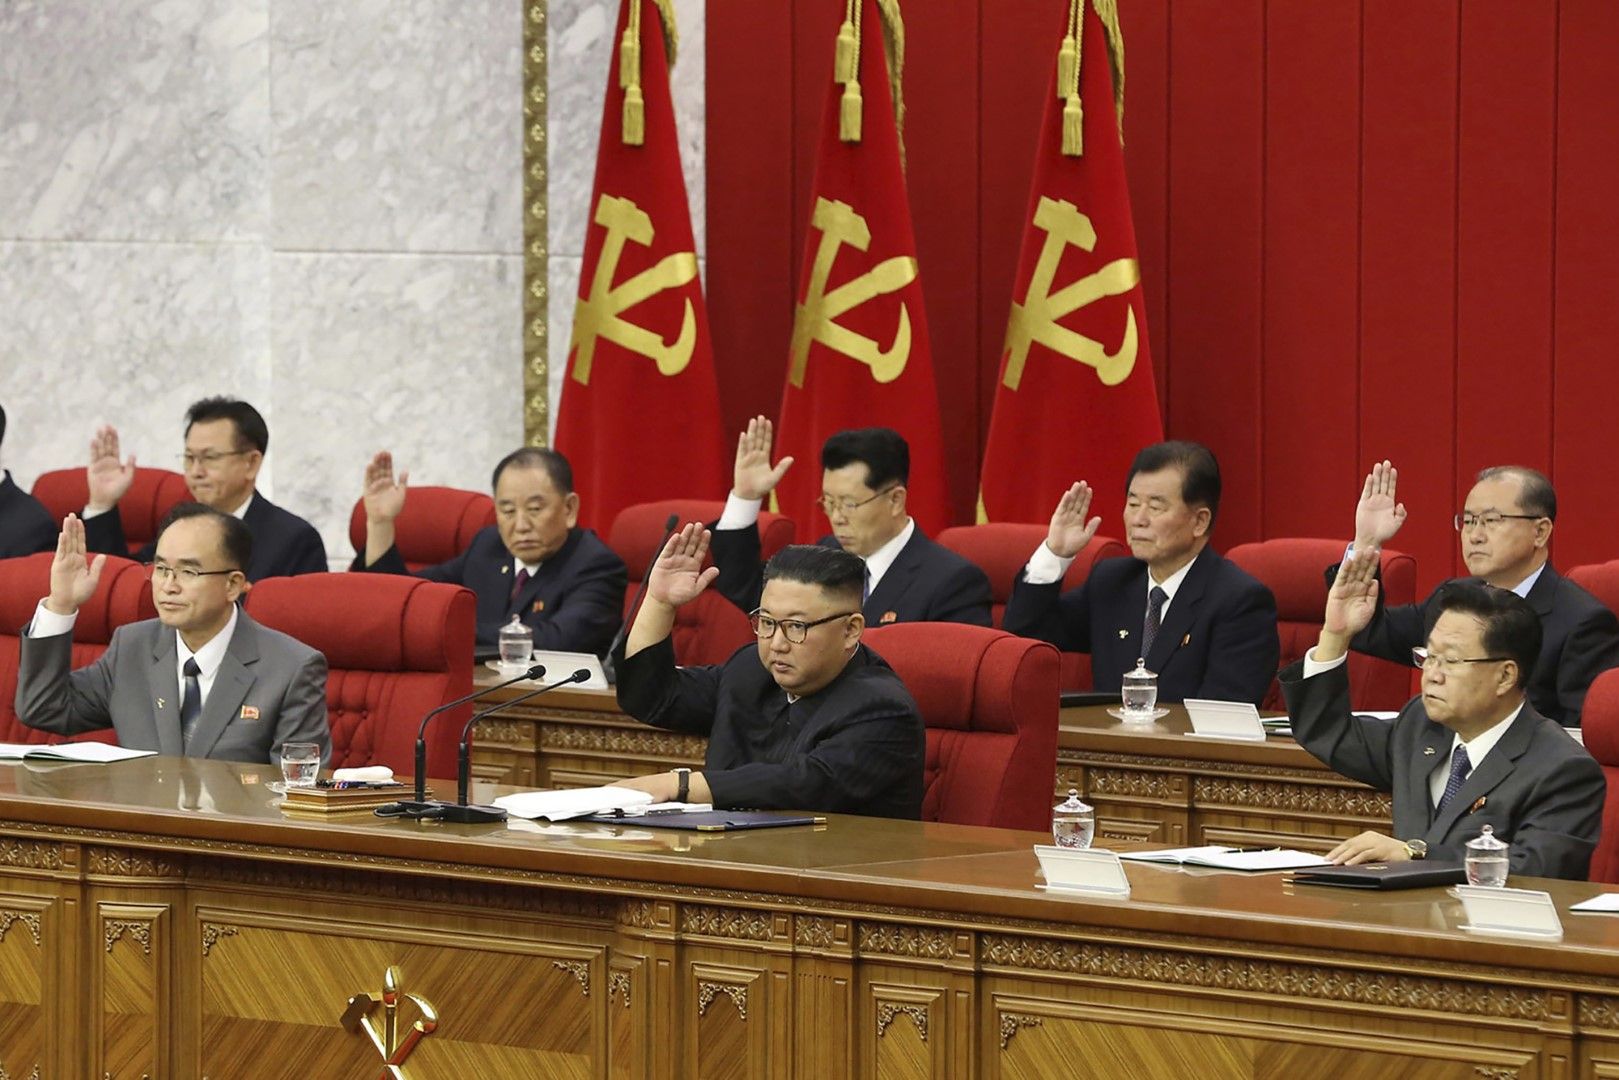 18 юни 2021 г., Пхенян. Снимка, предоставена от правителството на Северна Корея, показва лидерът на Северна Корея Ким Чен Ун (в средата) по време на събранието на Работническата партия